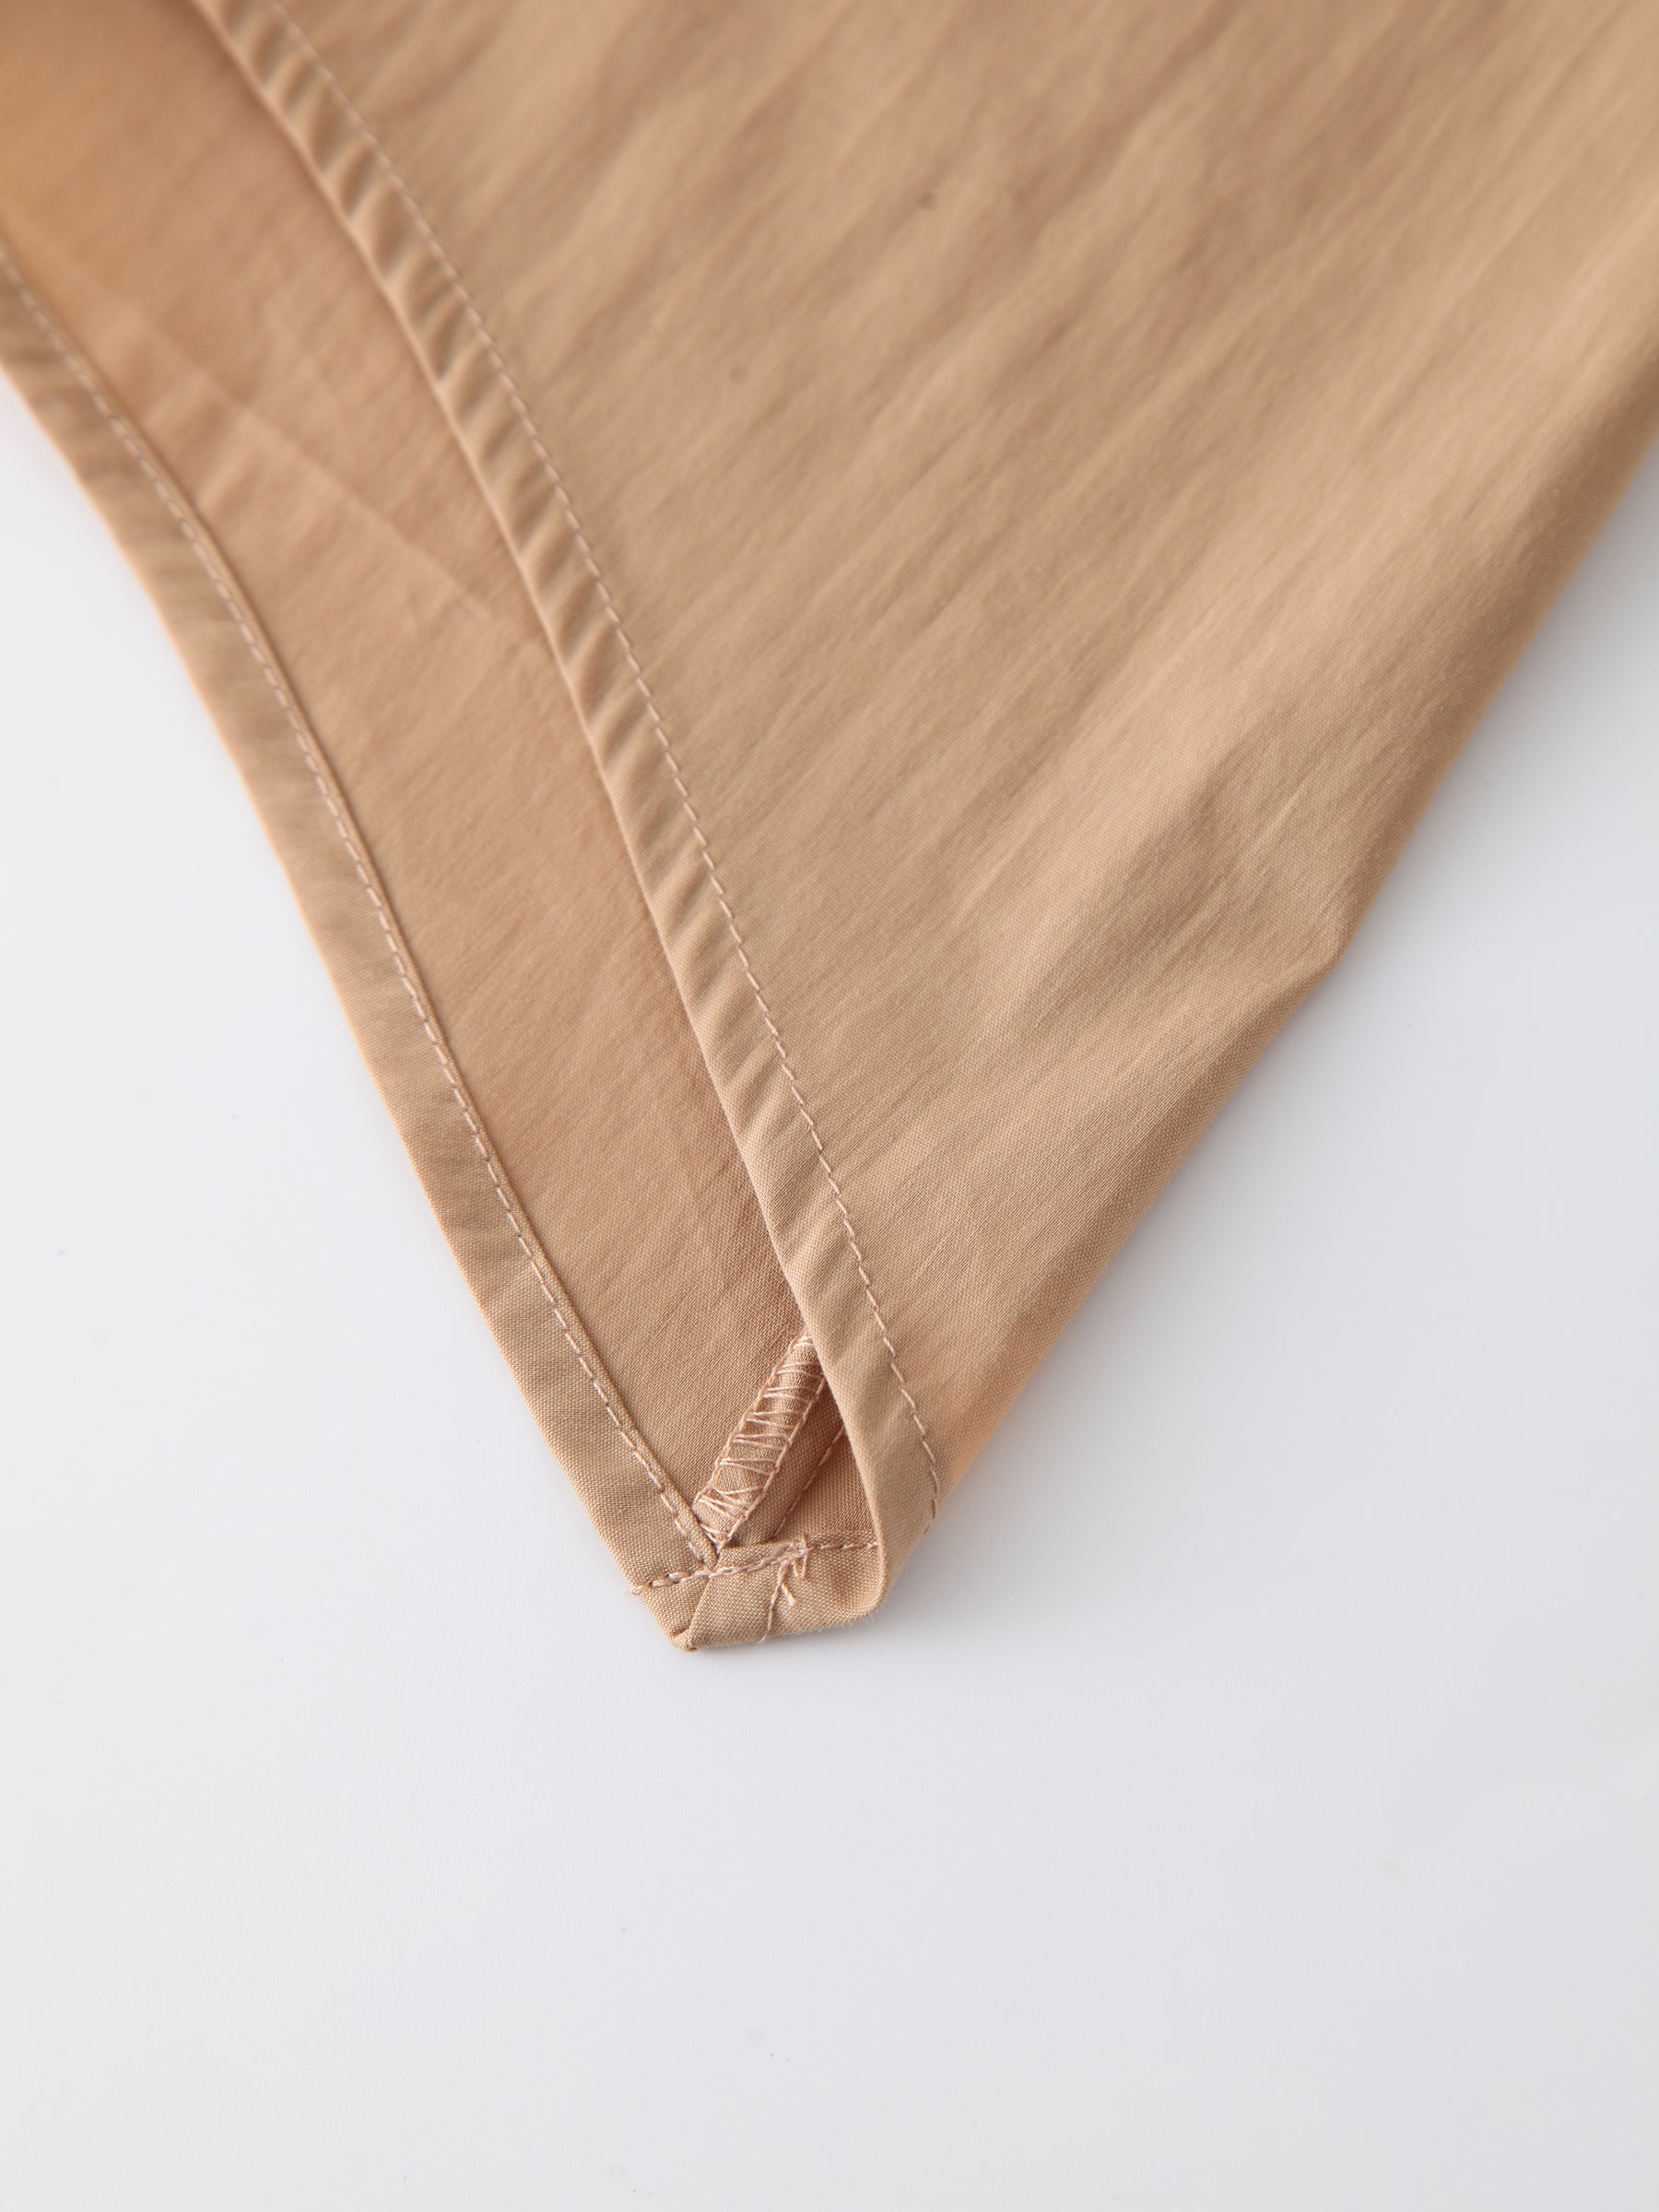 Buckle Cargo Skirt-Tan